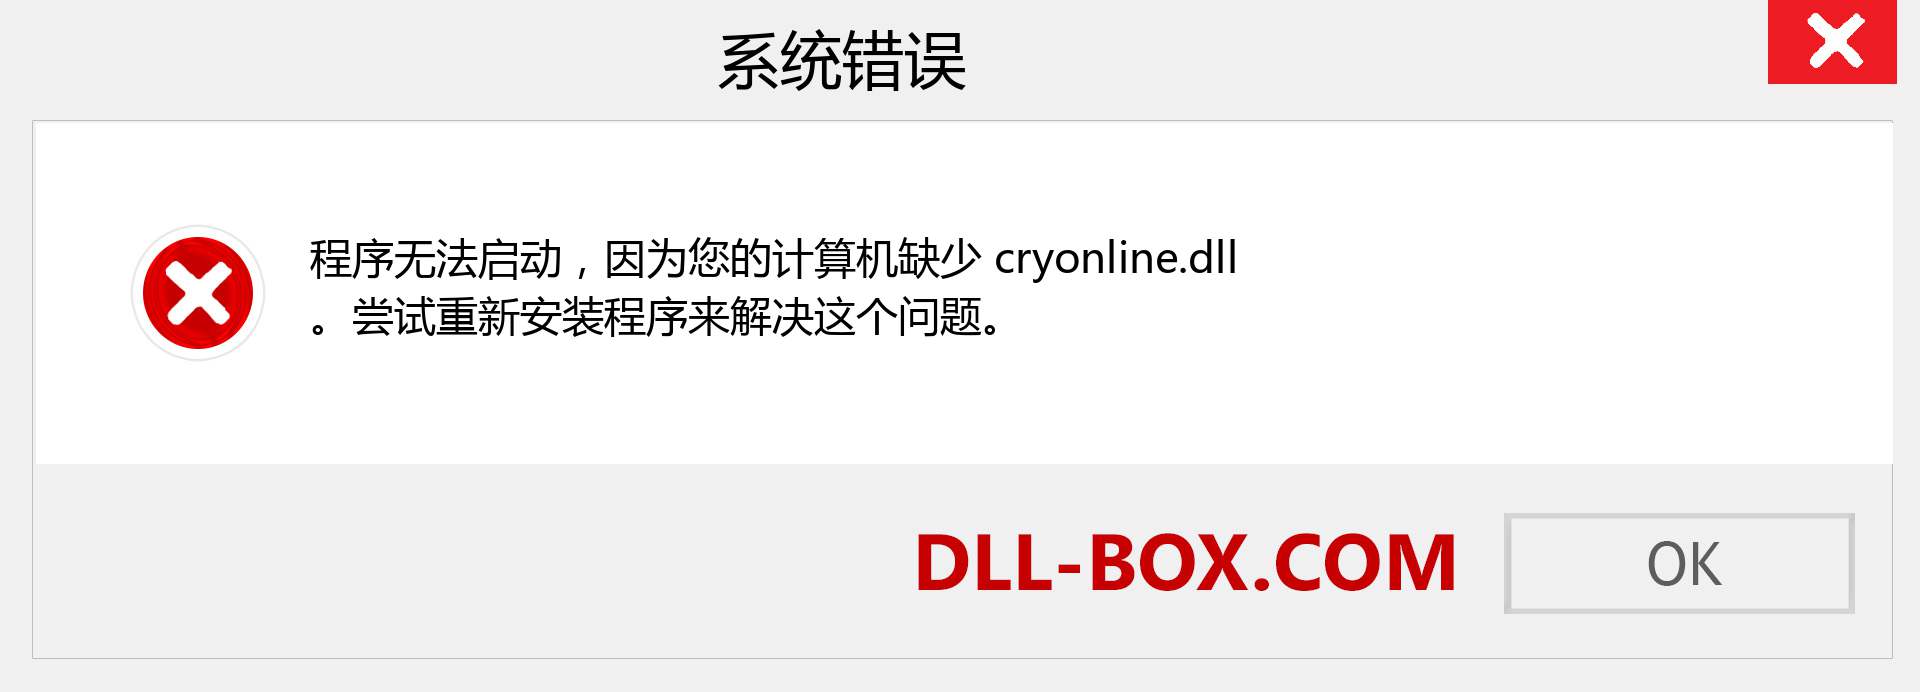 cryonline.dll 文件丢失？。 适用于 Windows 7、8、10 的下载 - 修复 Windows、照片、图像上的 cryonline dll 丢失错误